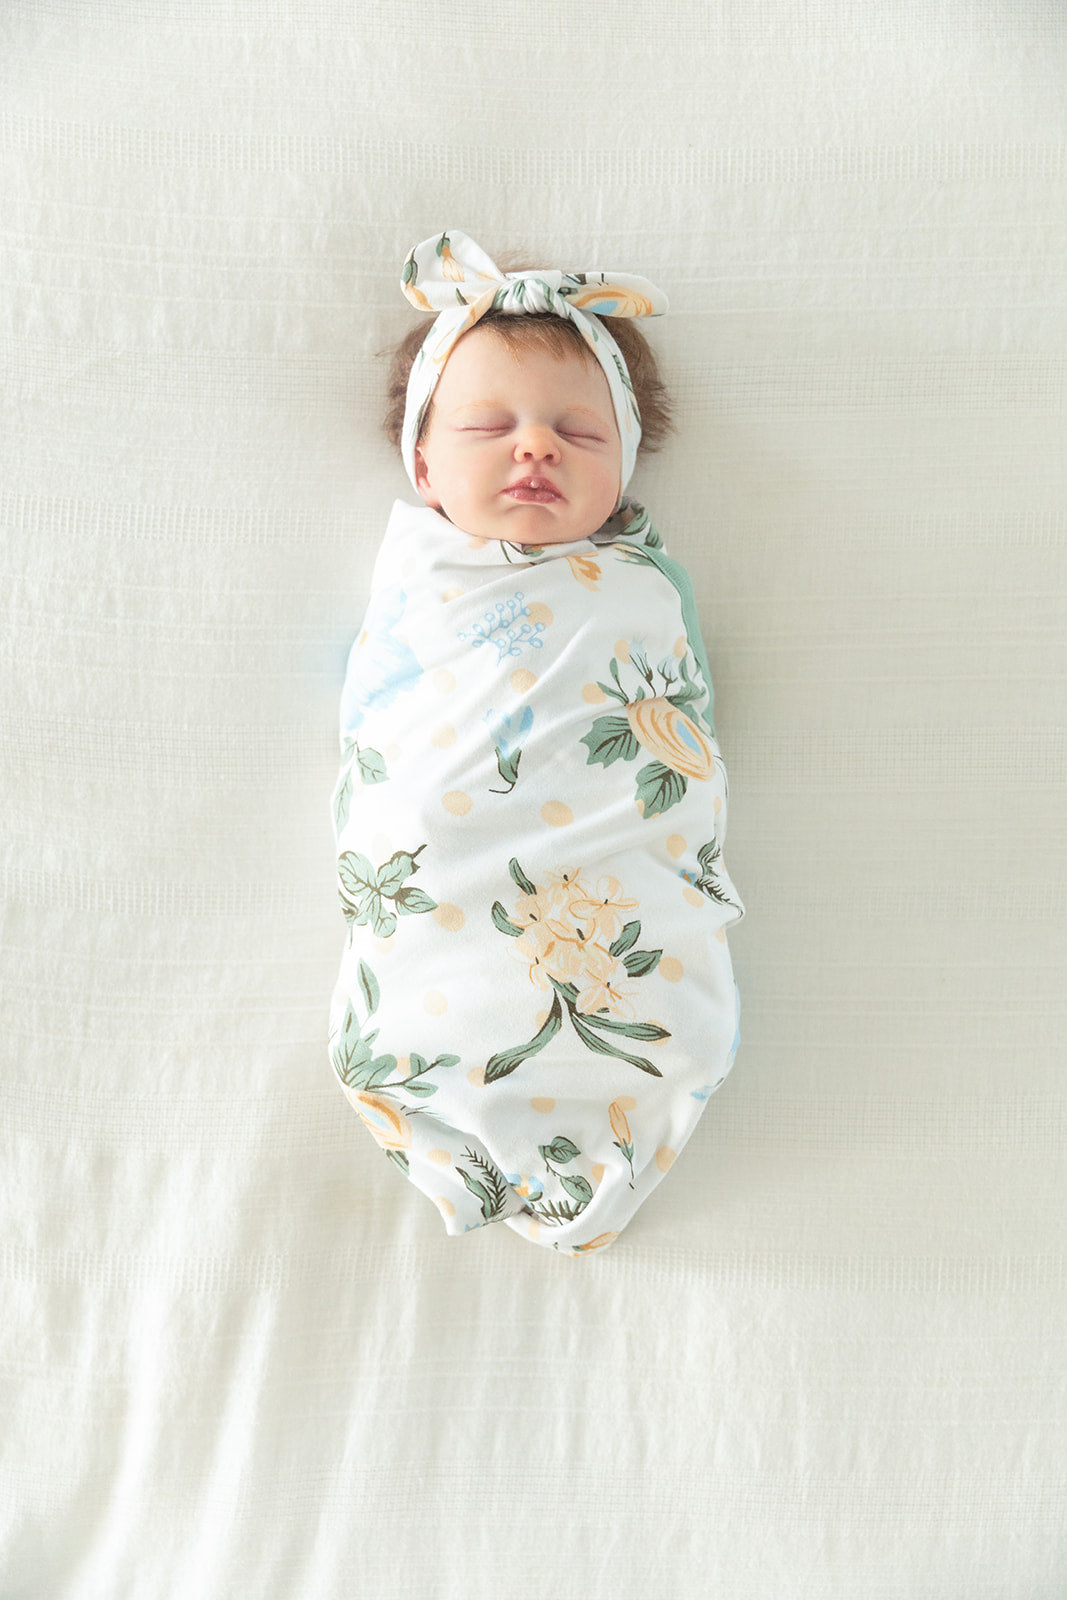 Olive Green Pregnancy/Postpartum Robe & Hadley Baby Swaddle Blanket & Headband Set